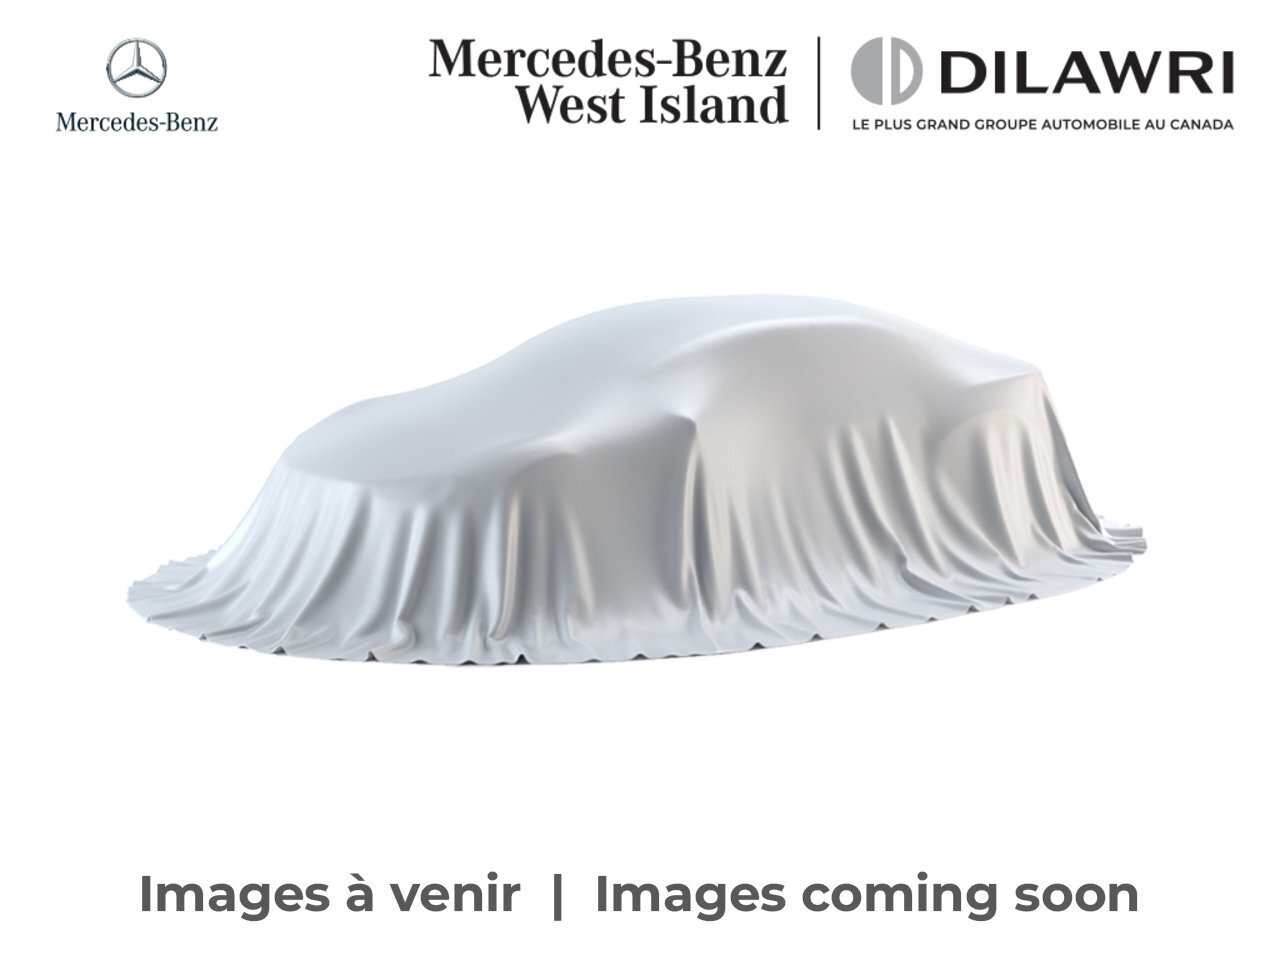 2022 Mercedes-Benz GLC300 4MATIC SUV * Certifié * Certified Premium * Premiu